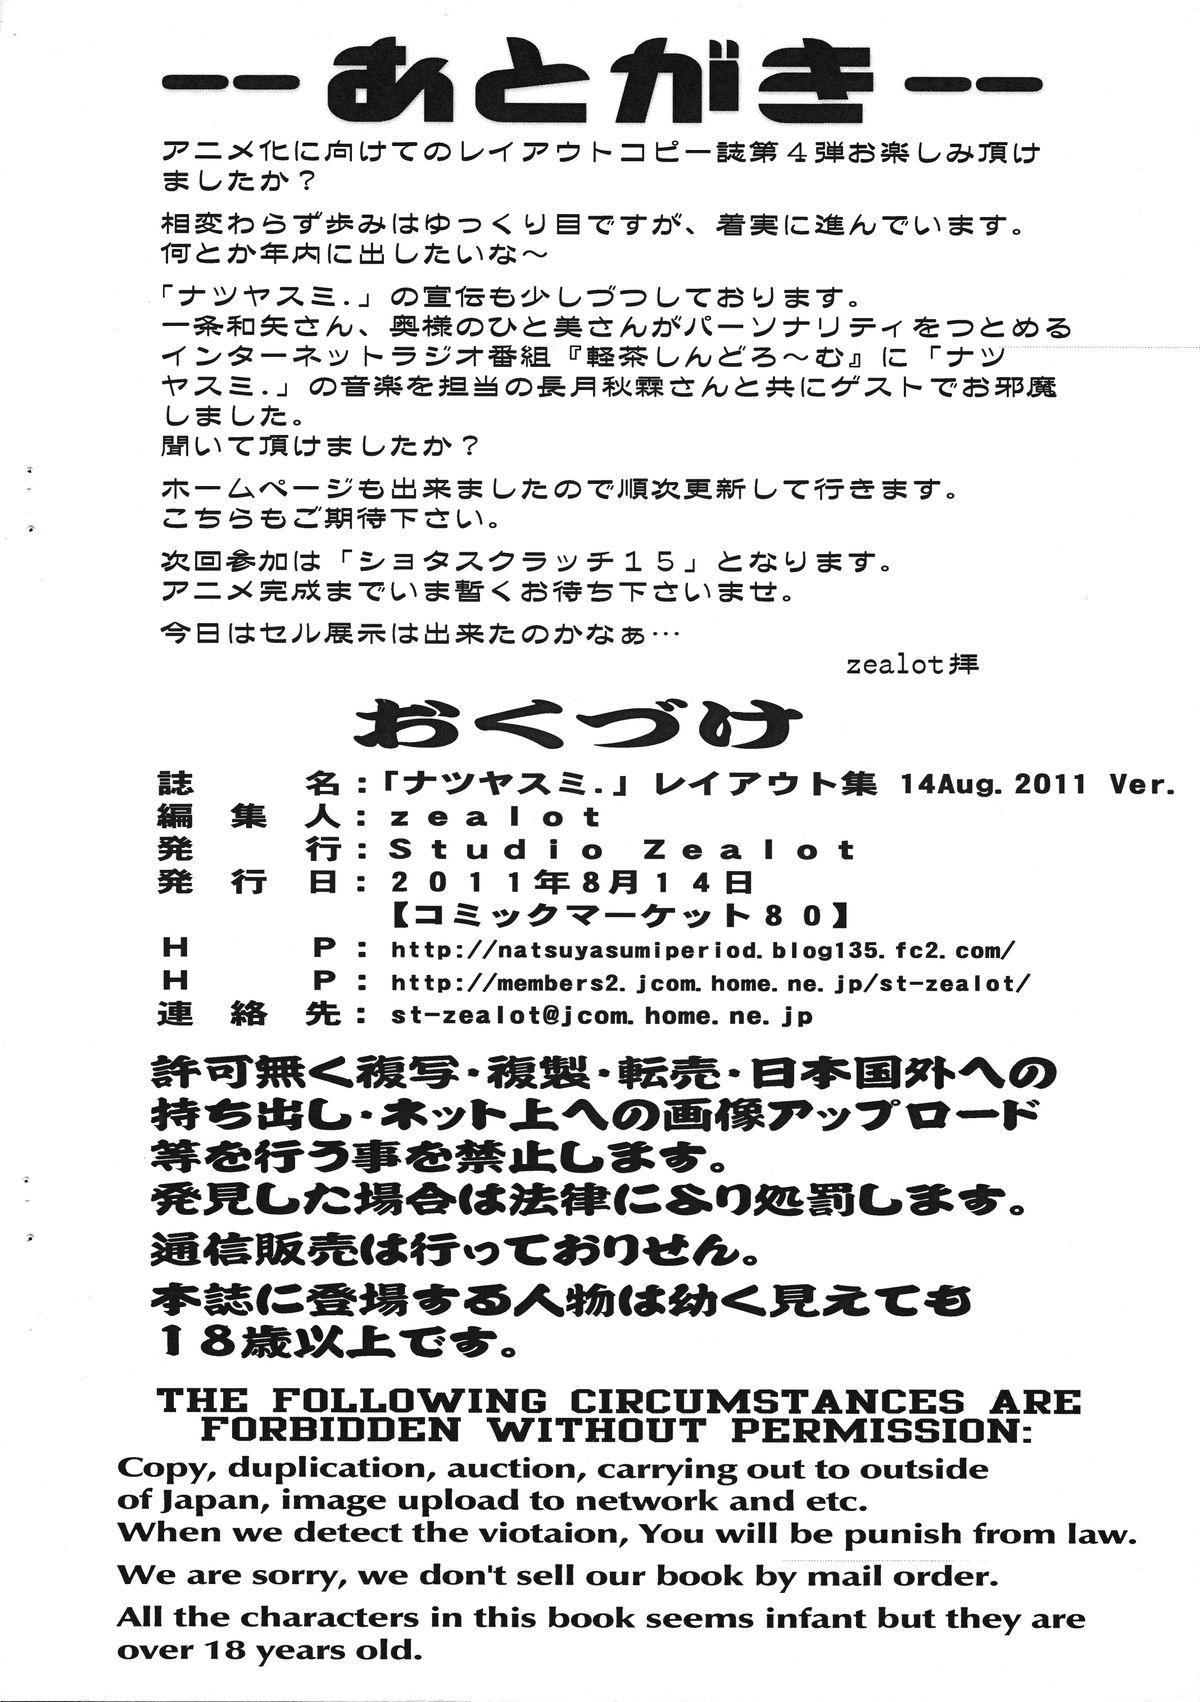 Home Natsuyasumi Period Layout Shuu 14 Aug. 2011 Ver. Porno 18 - Page 11